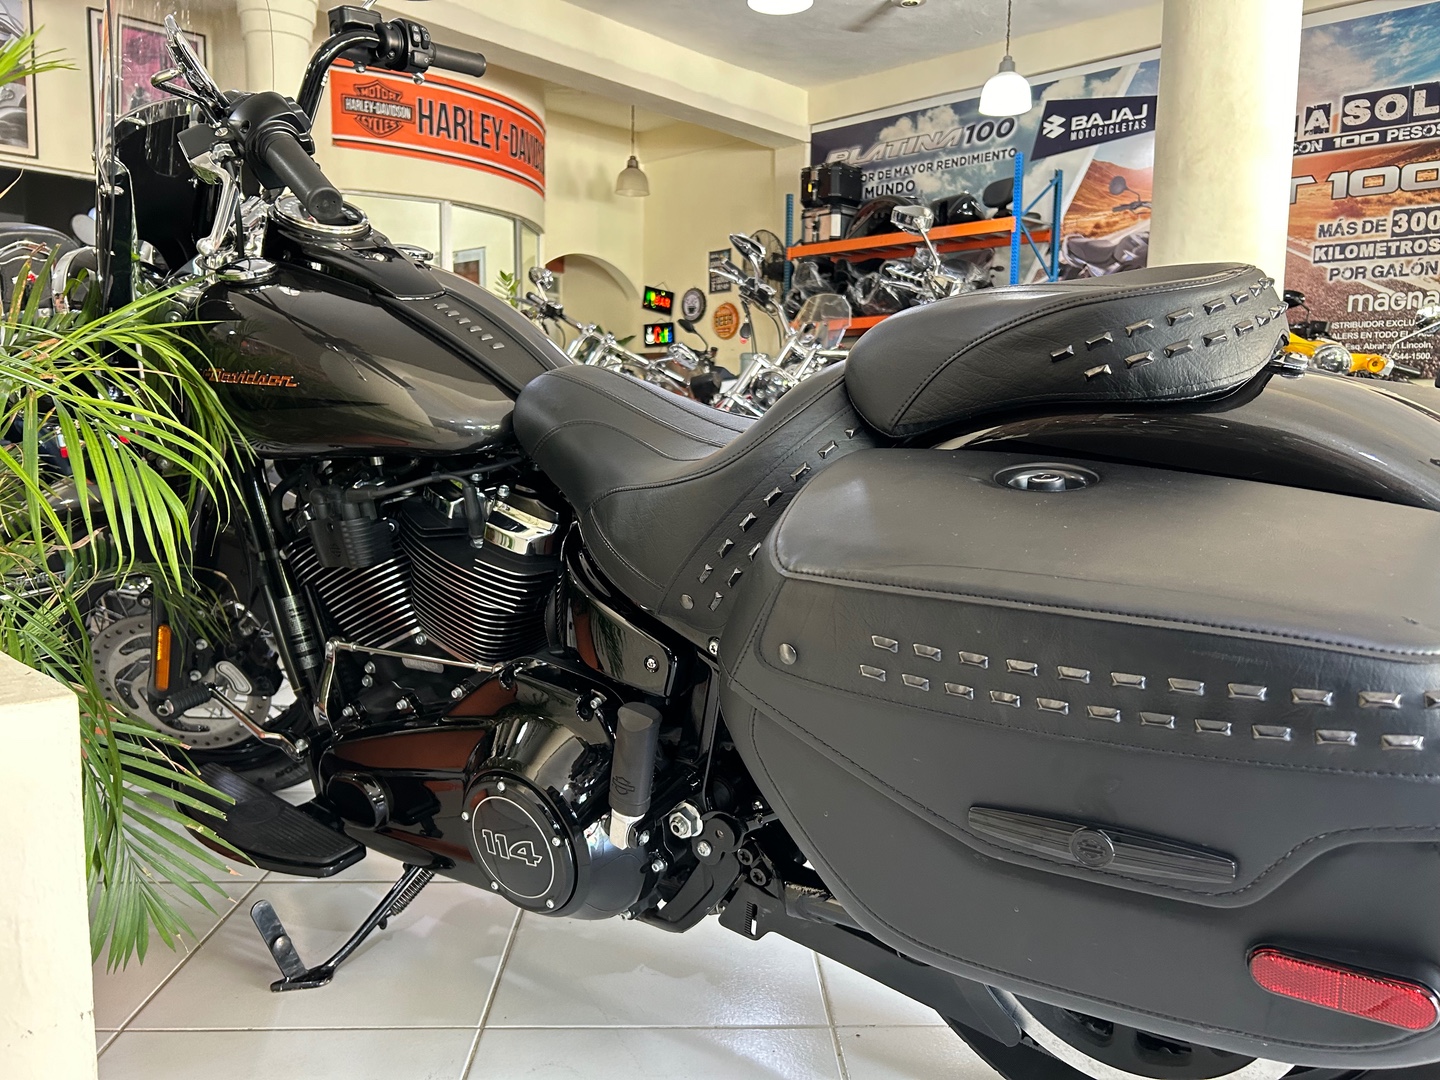 motores y pasolas - Harley Davidson Heritage 114 año 2019 6